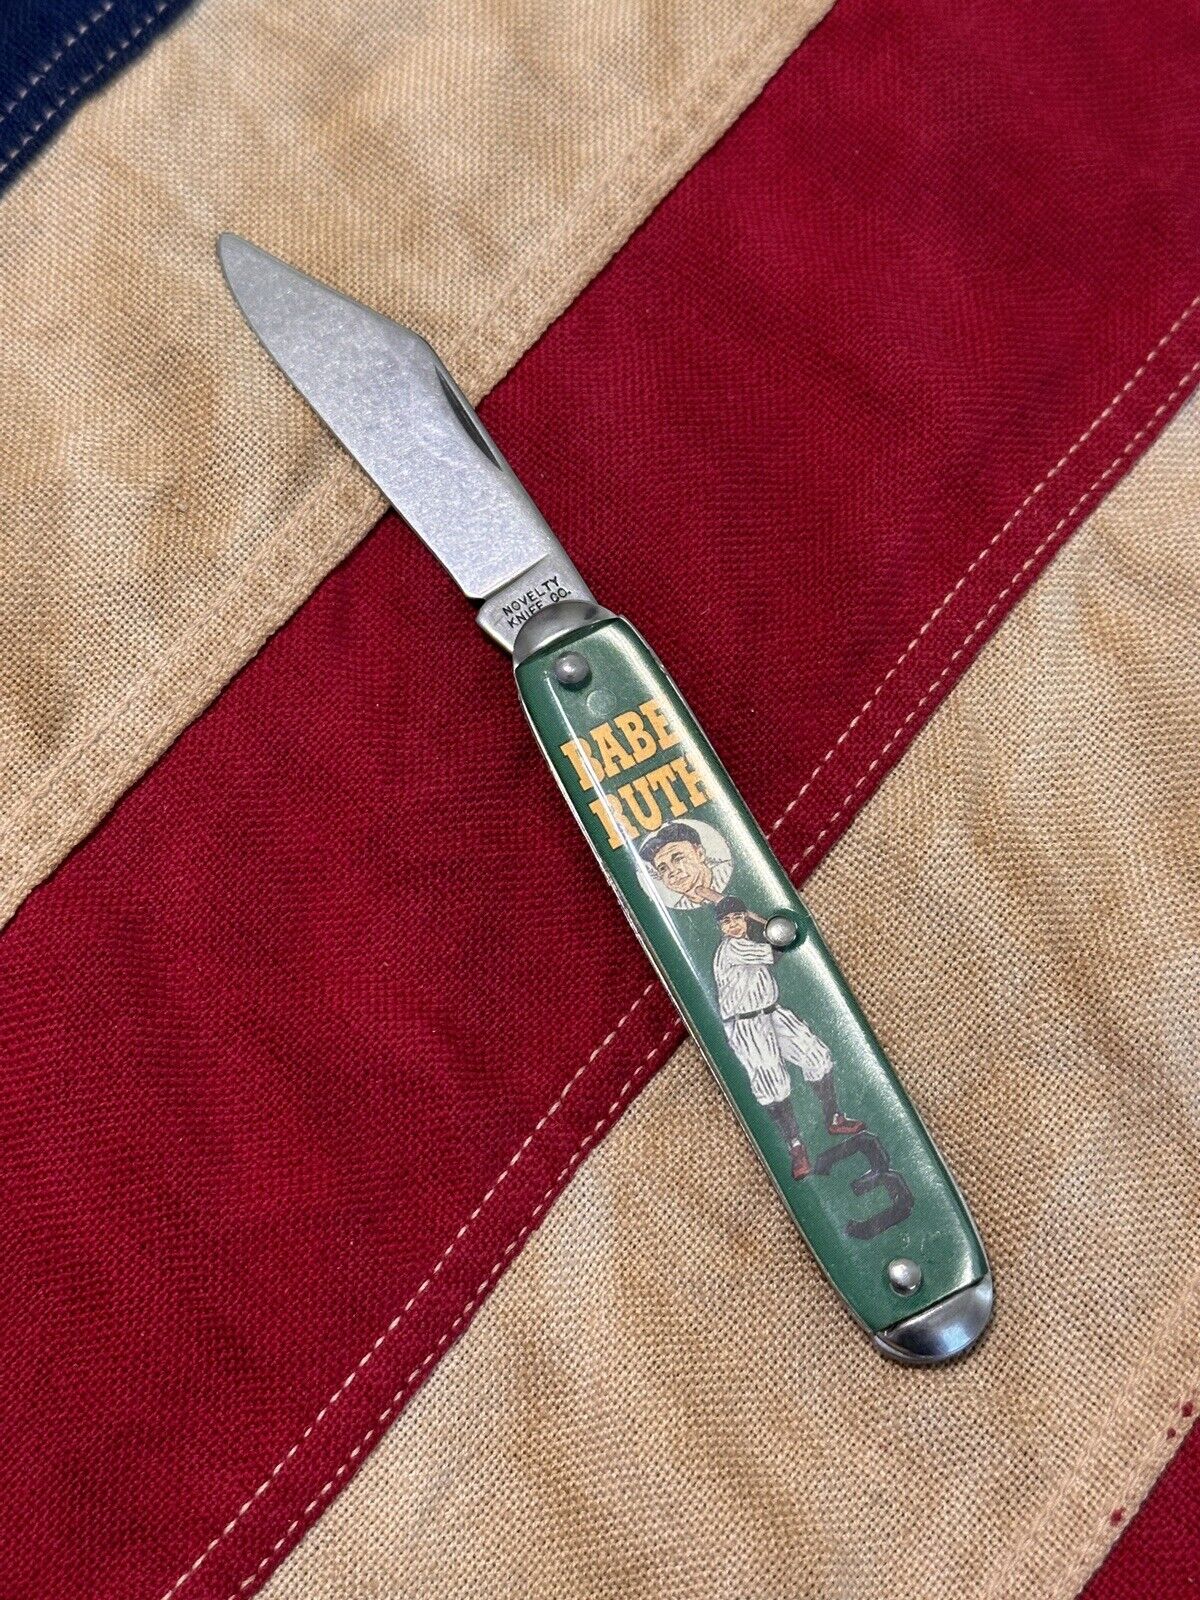 Babe Ruth Pocket Knife Novelty Knife Company 